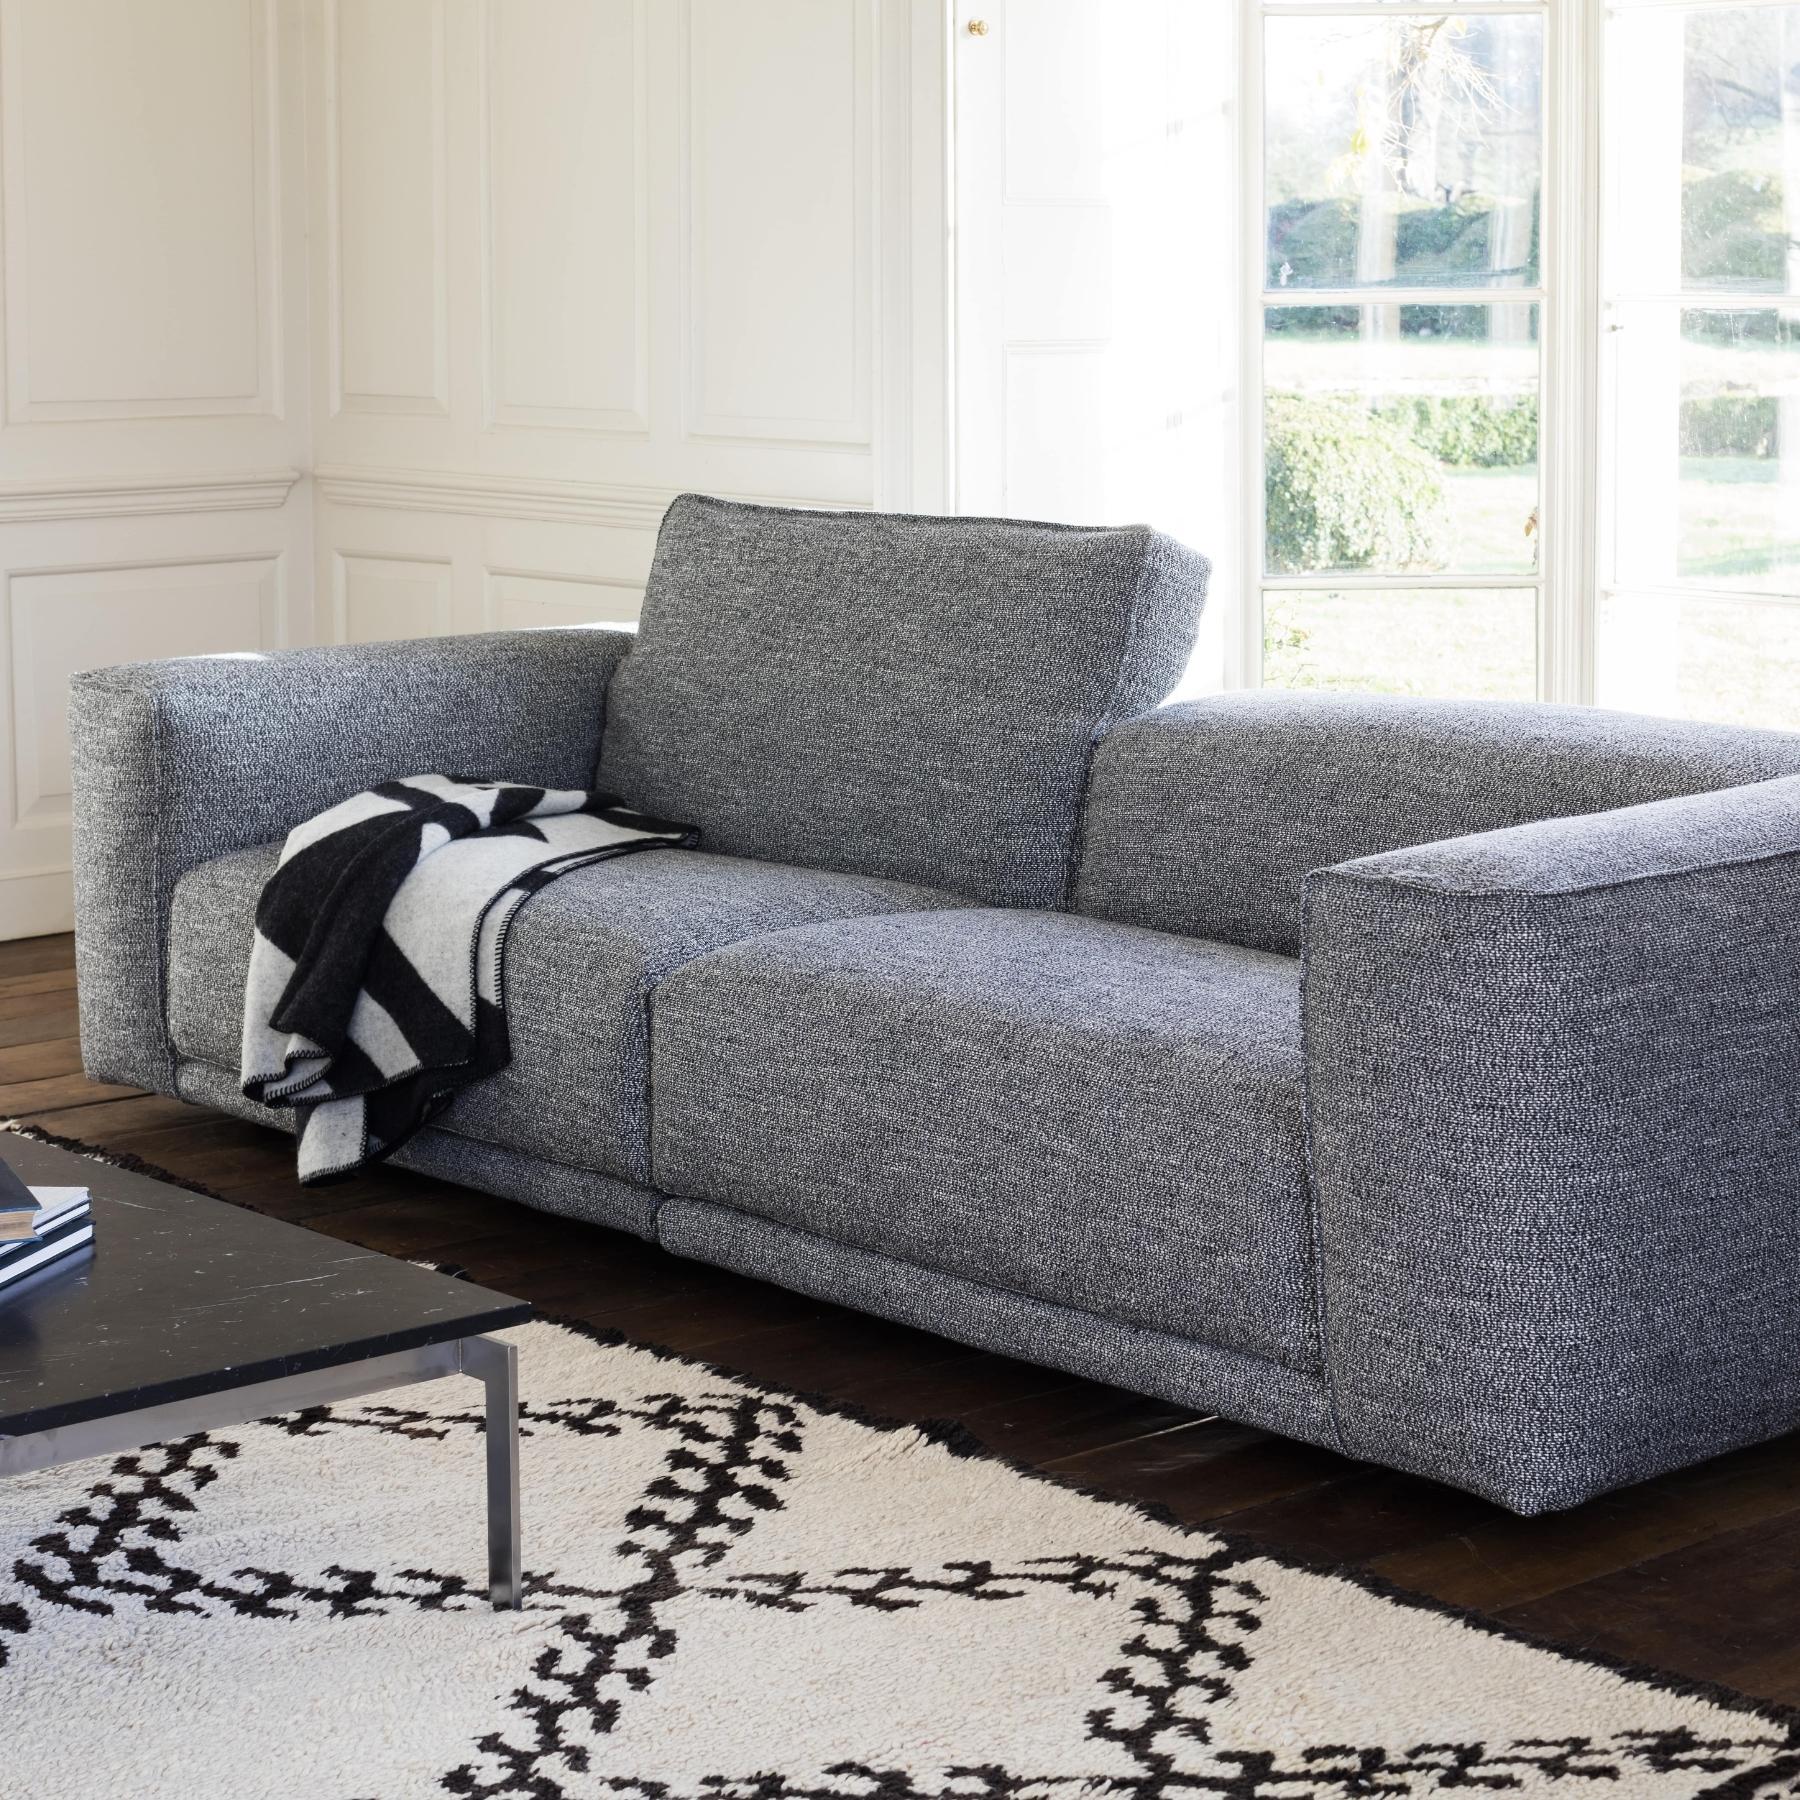 Kelston Sofa 290 cm | Fabric